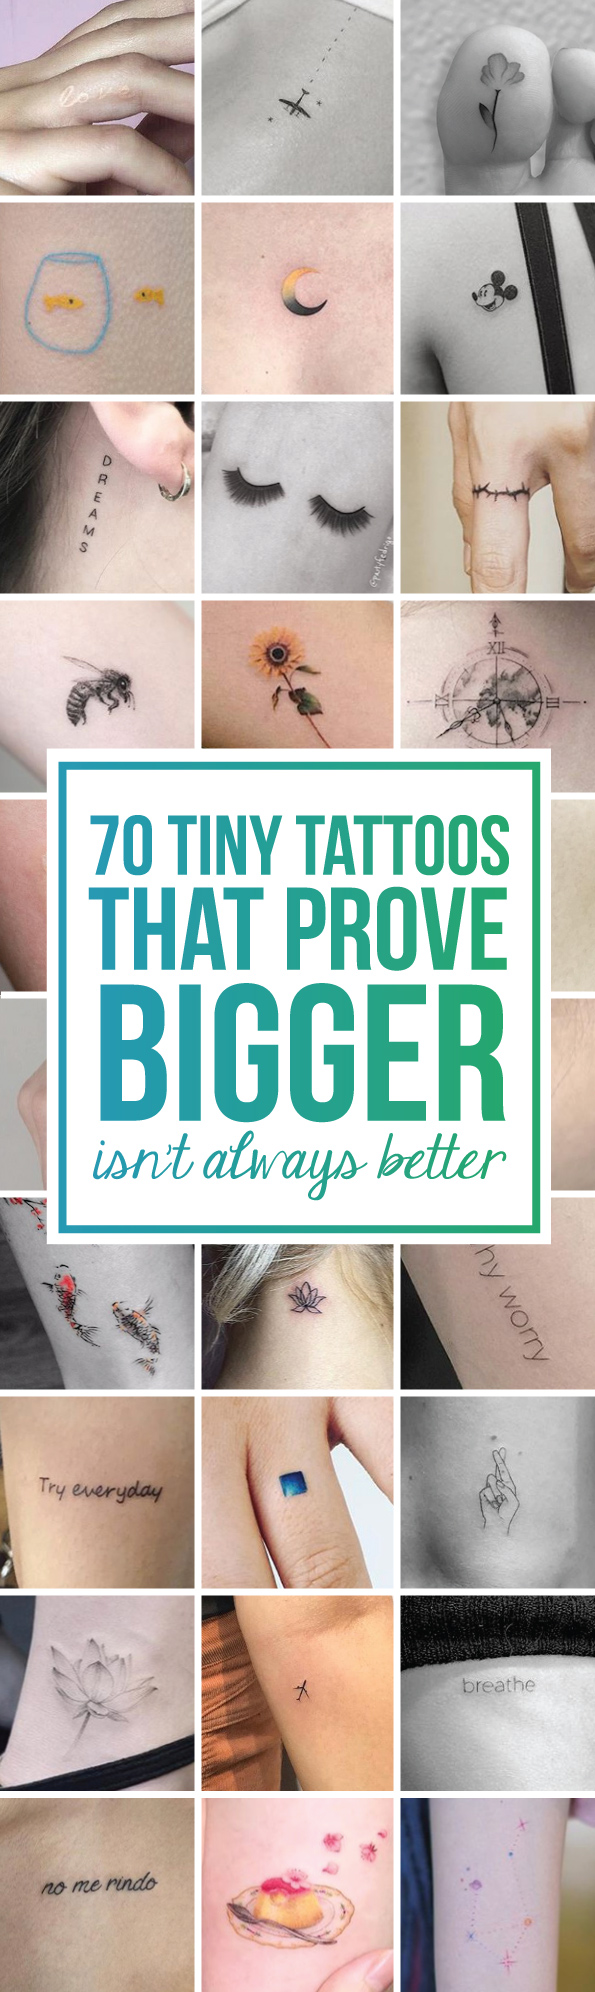 70 Tiny Tattoos That Prove Bigger Isn’t Always Better - TattooBlend